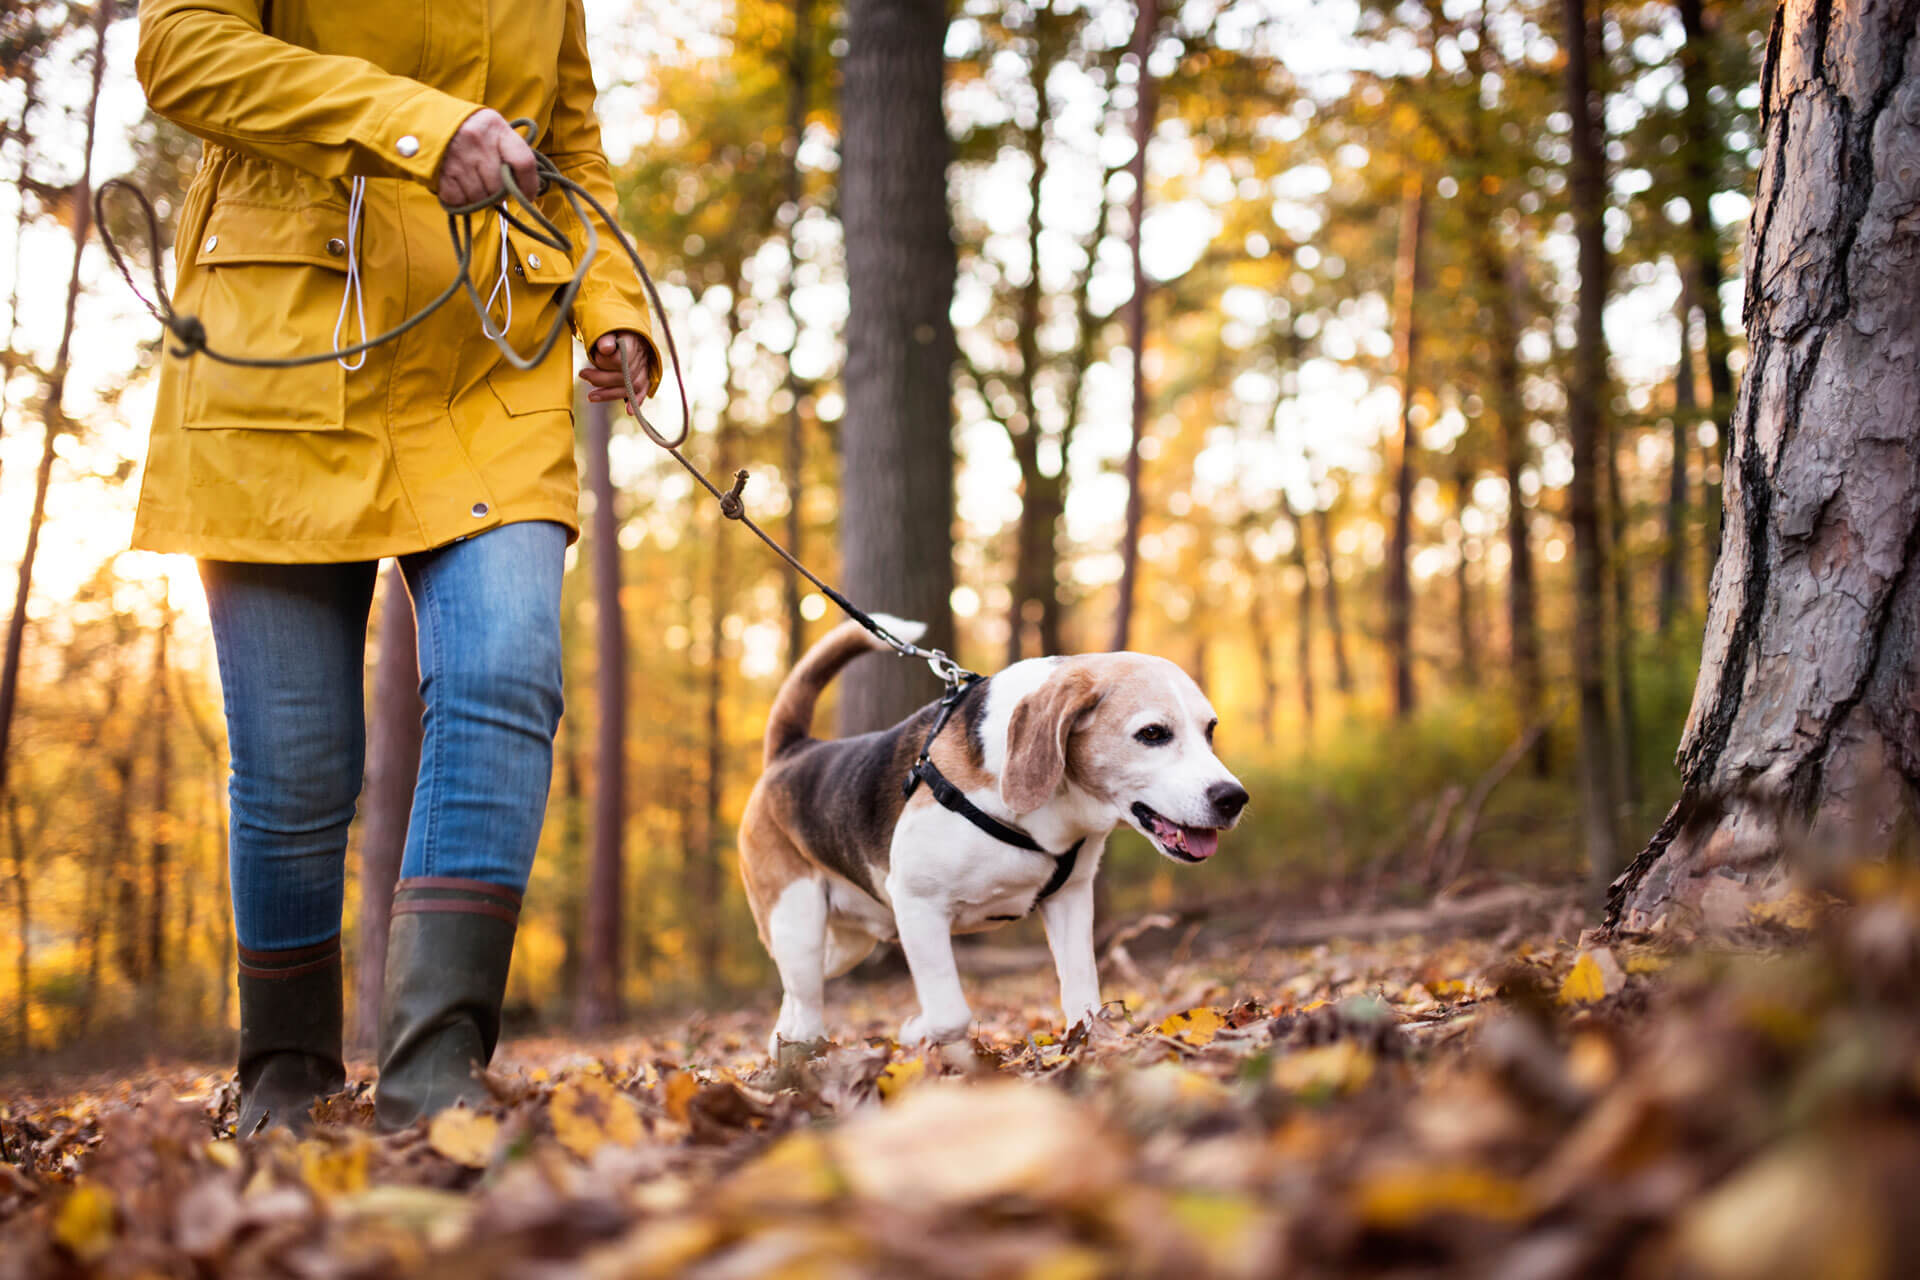 Femme avec un manteau jaune et des bottes brunes et un petit chien marchant dans la forêt en automne pendant le confinement dû au coronavirus.